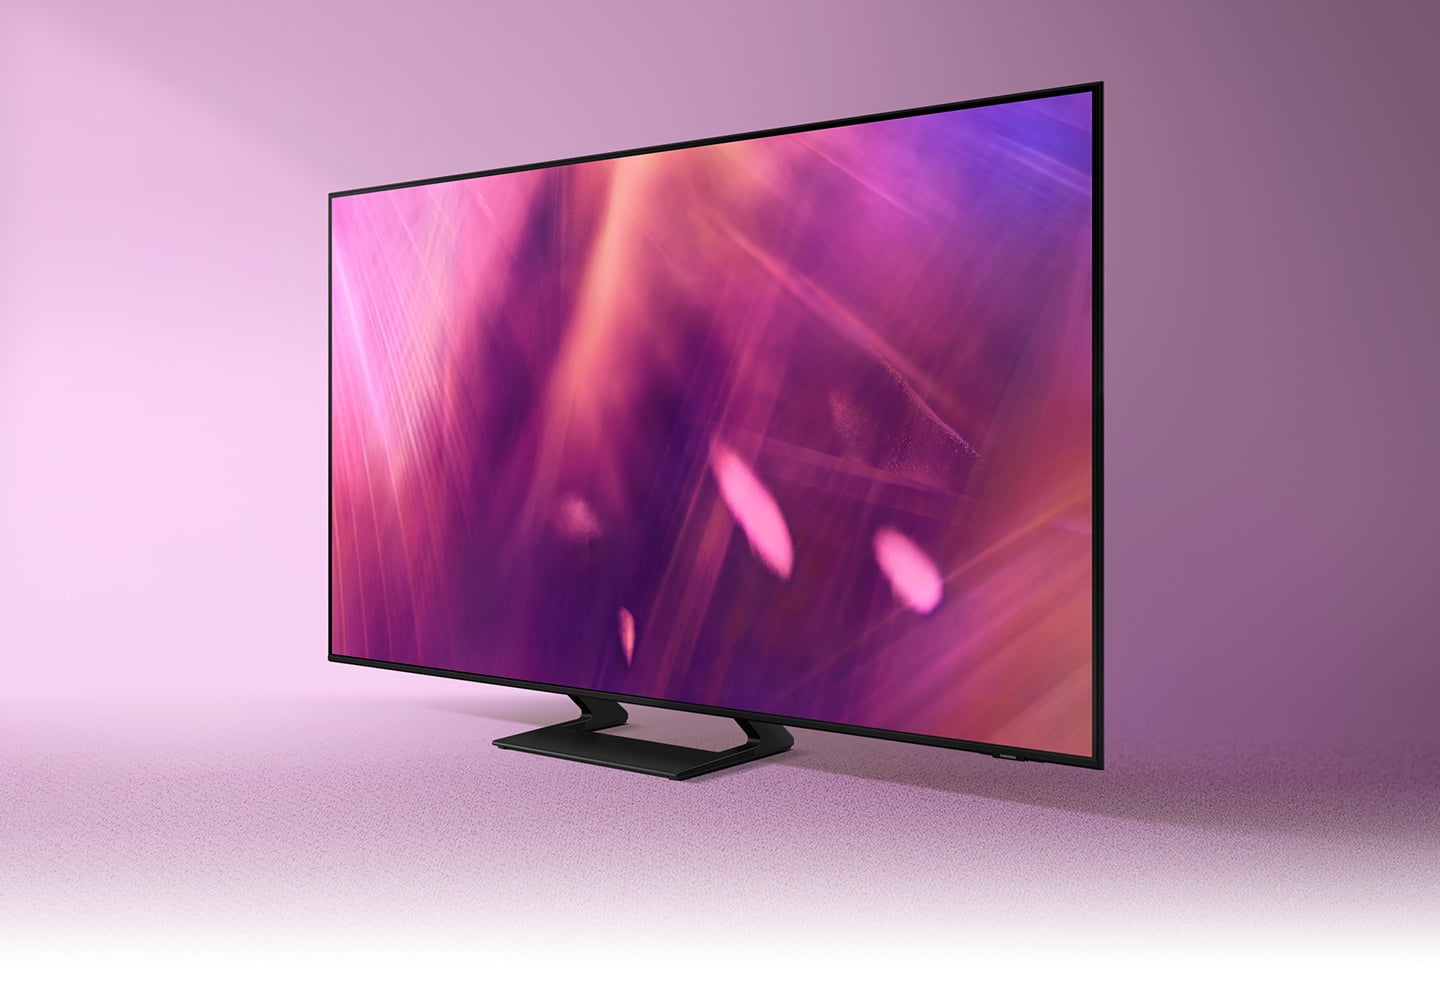 Marzysz od telewizorze doskonałym? Postaw na telewizor Samsung UHD 4K Smart TV AU9002 i ciesz się doskonałością obrazu i dźwięku!